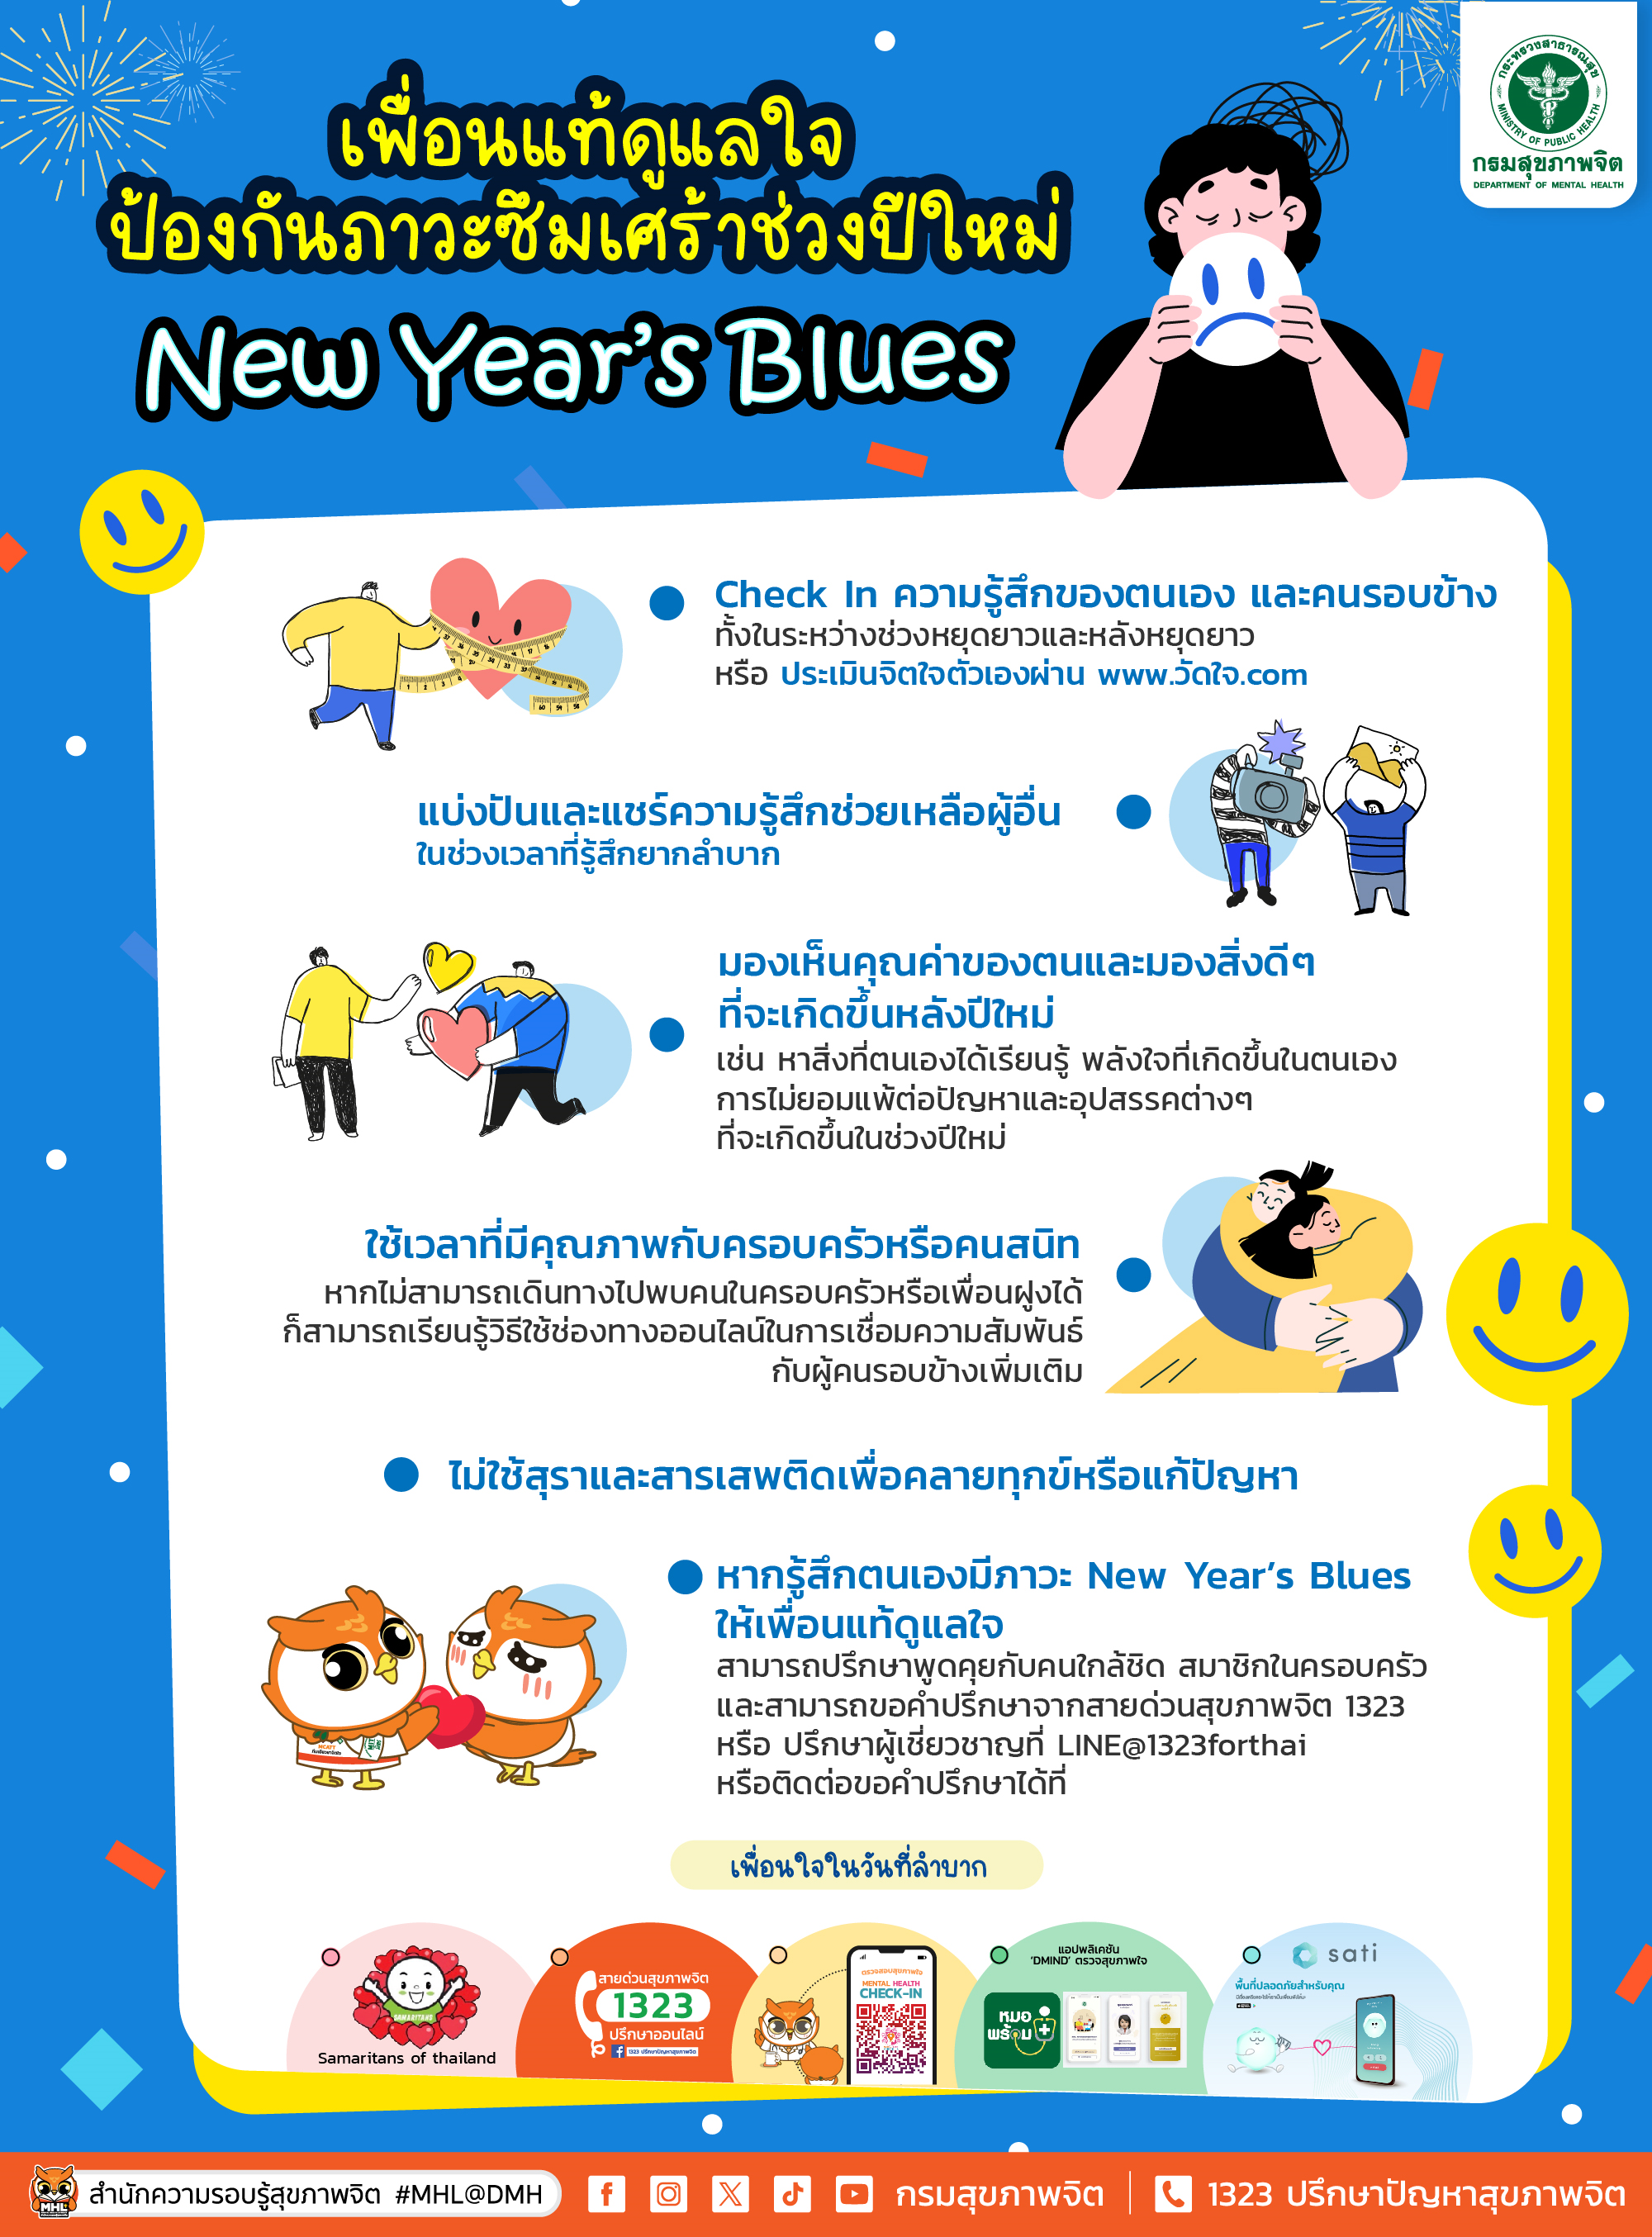 กรมสุขภาพจิต เผย 5 เทคนิคเพื่อนแท้ดูแลใจ เพื่อห่างไกลภาวะซึมเศร้าหลังเทศกาลปีใหม่ 2567 (New Year’s Blues)